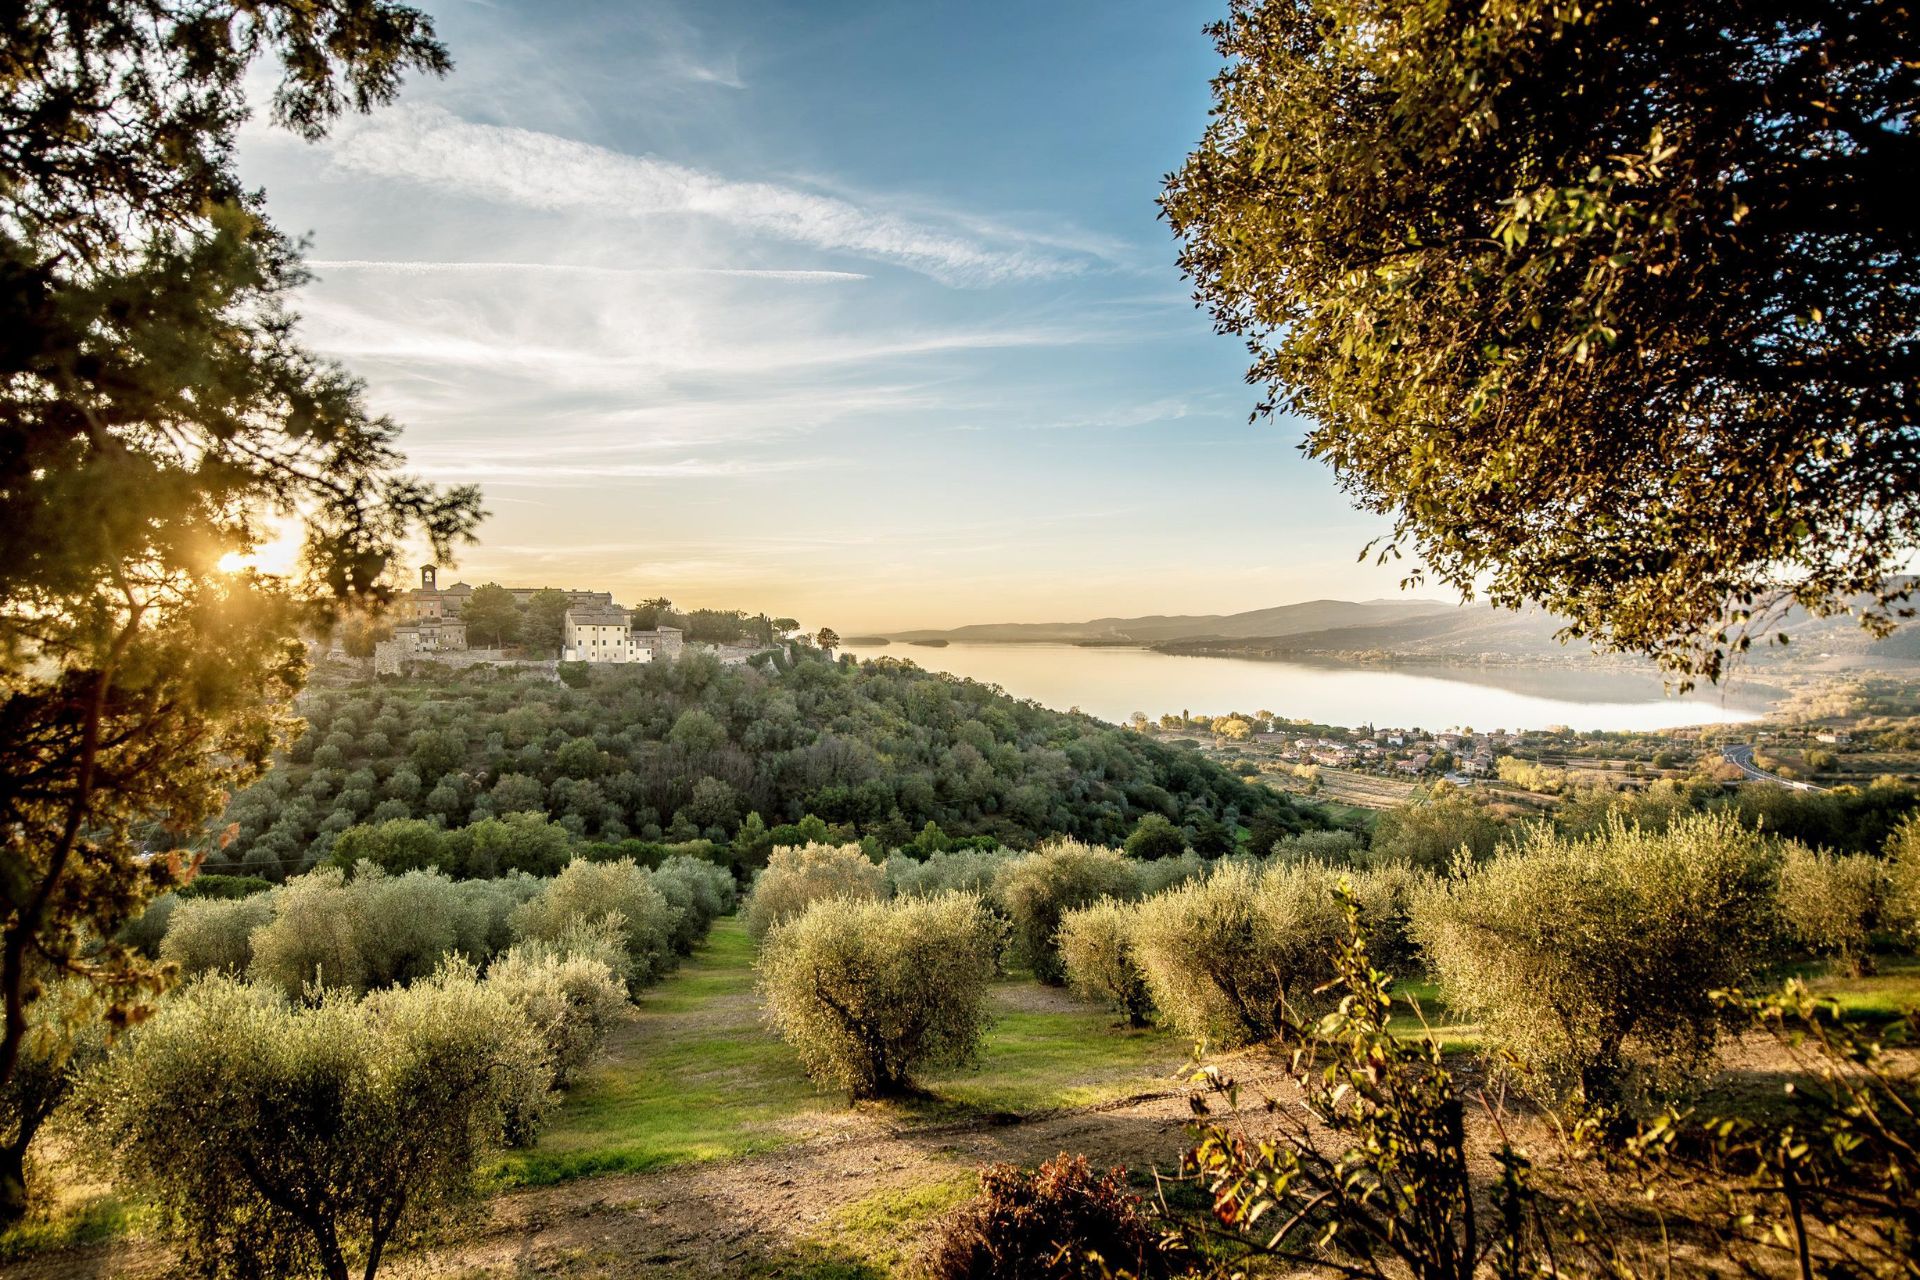 Autunno Great Stays: raccogli le olive e degusta vini pregiati del territorio umbro